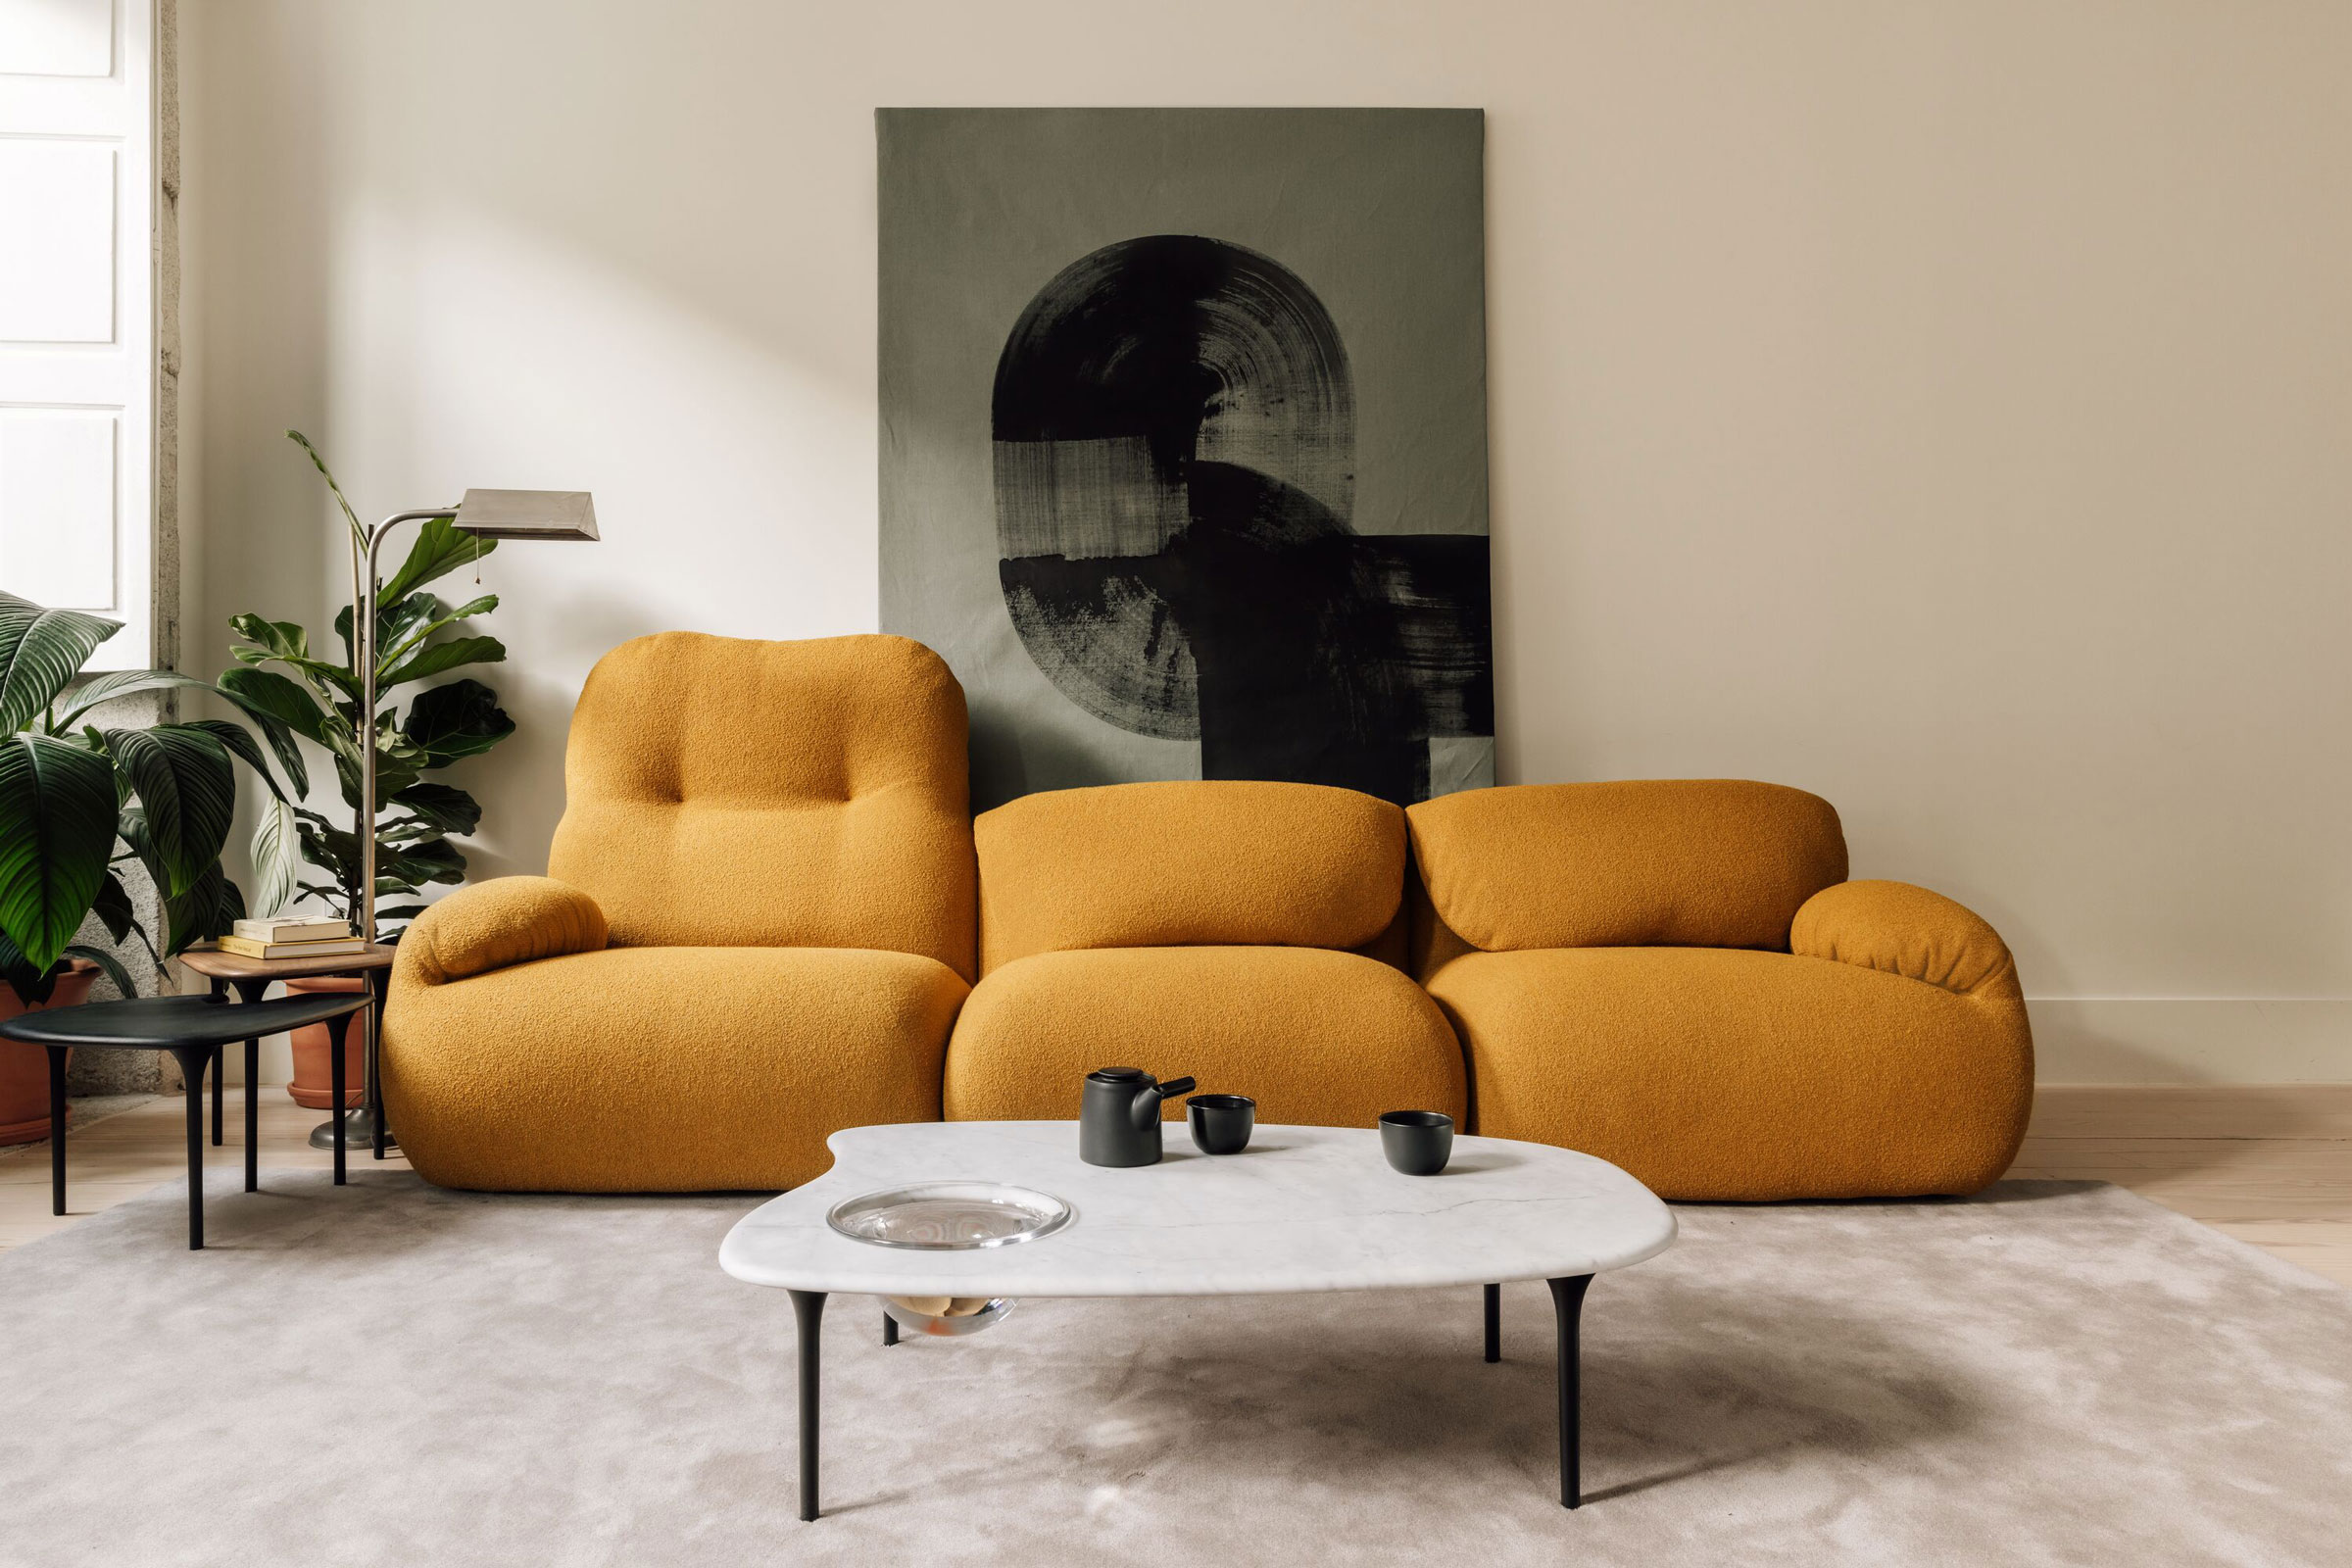 Sustainable Furniture Ideas for Bright Interior Design